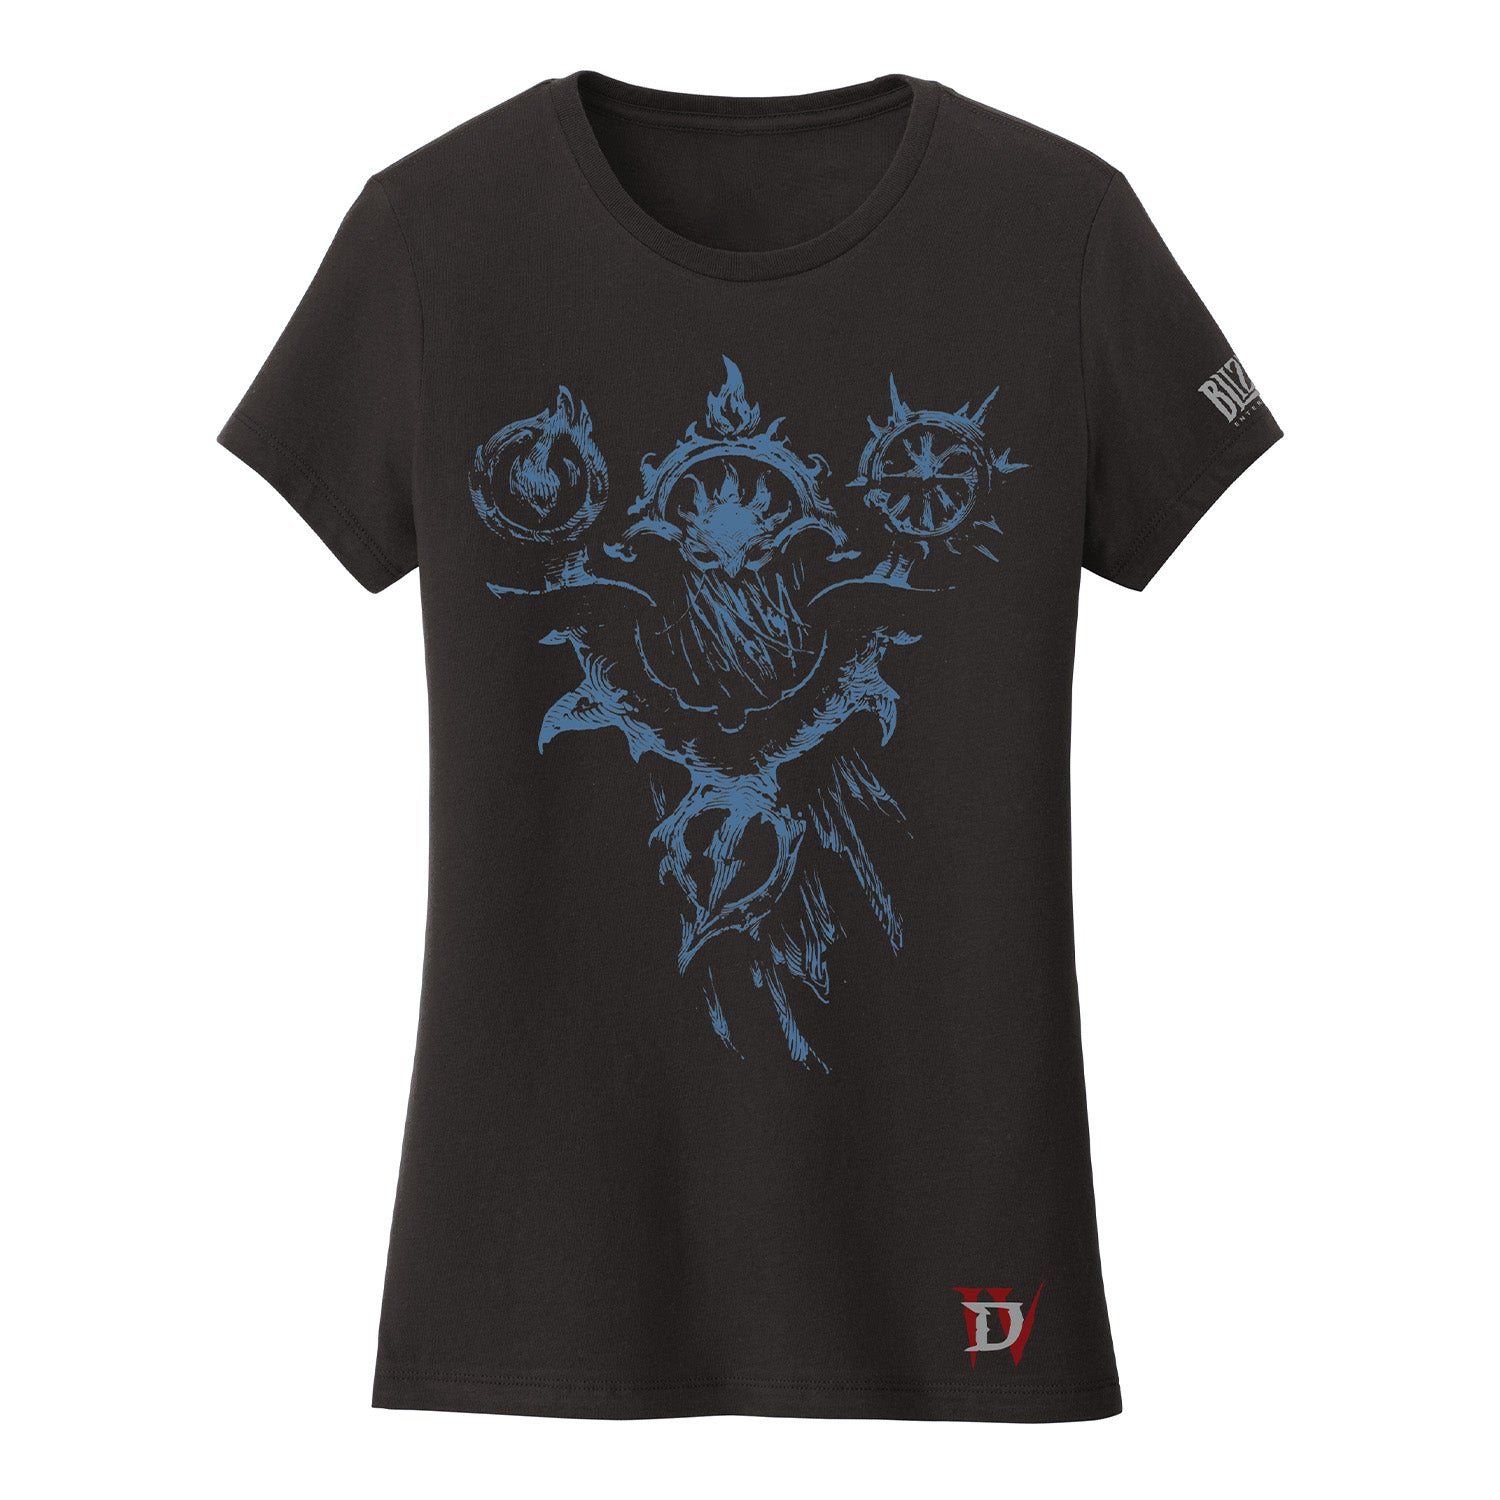 Diablo IV Sorcerer Women's Black T-Shirt - Front View